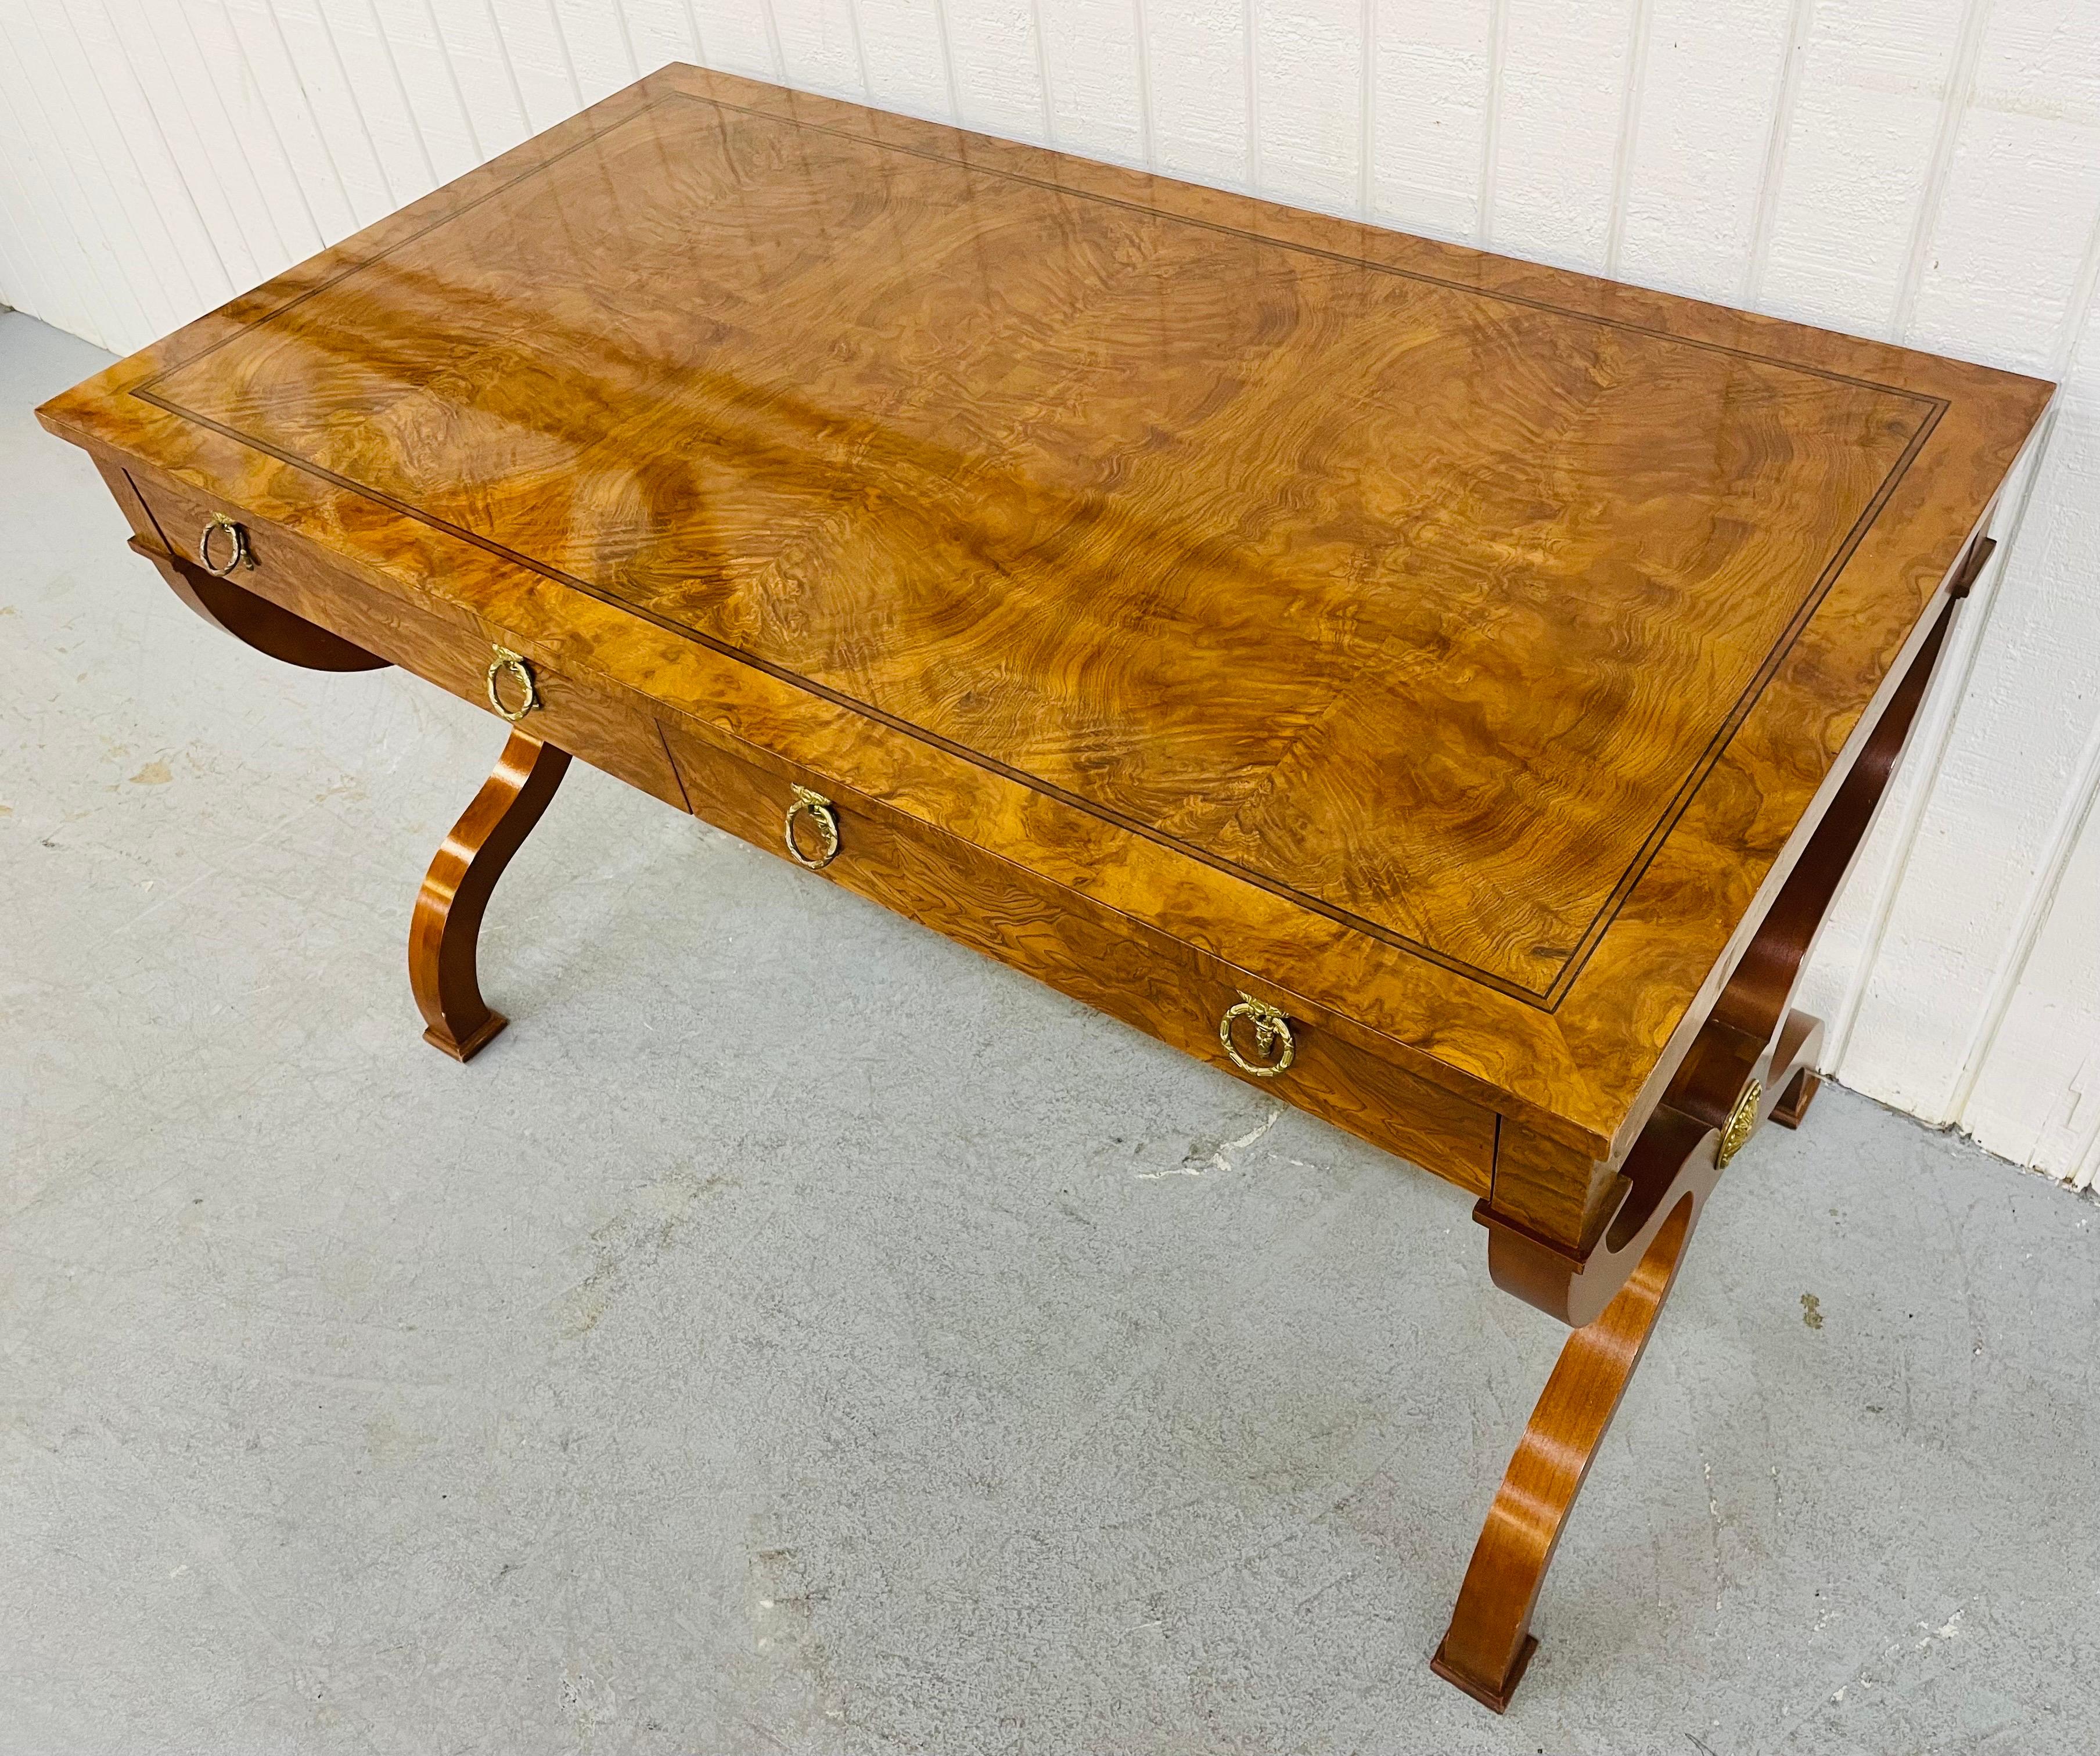 Diese Auflistung ist für eine Vintage Baker Furniture Regency Style Burled Writing Desk. Mit einer schönen rechteckigen Platte aus genopptem Holz, Beinen im Regency-Stil mit Verbindungsstreben, zwei Schubladen zur Aufbewahrung, originalen Griffen,